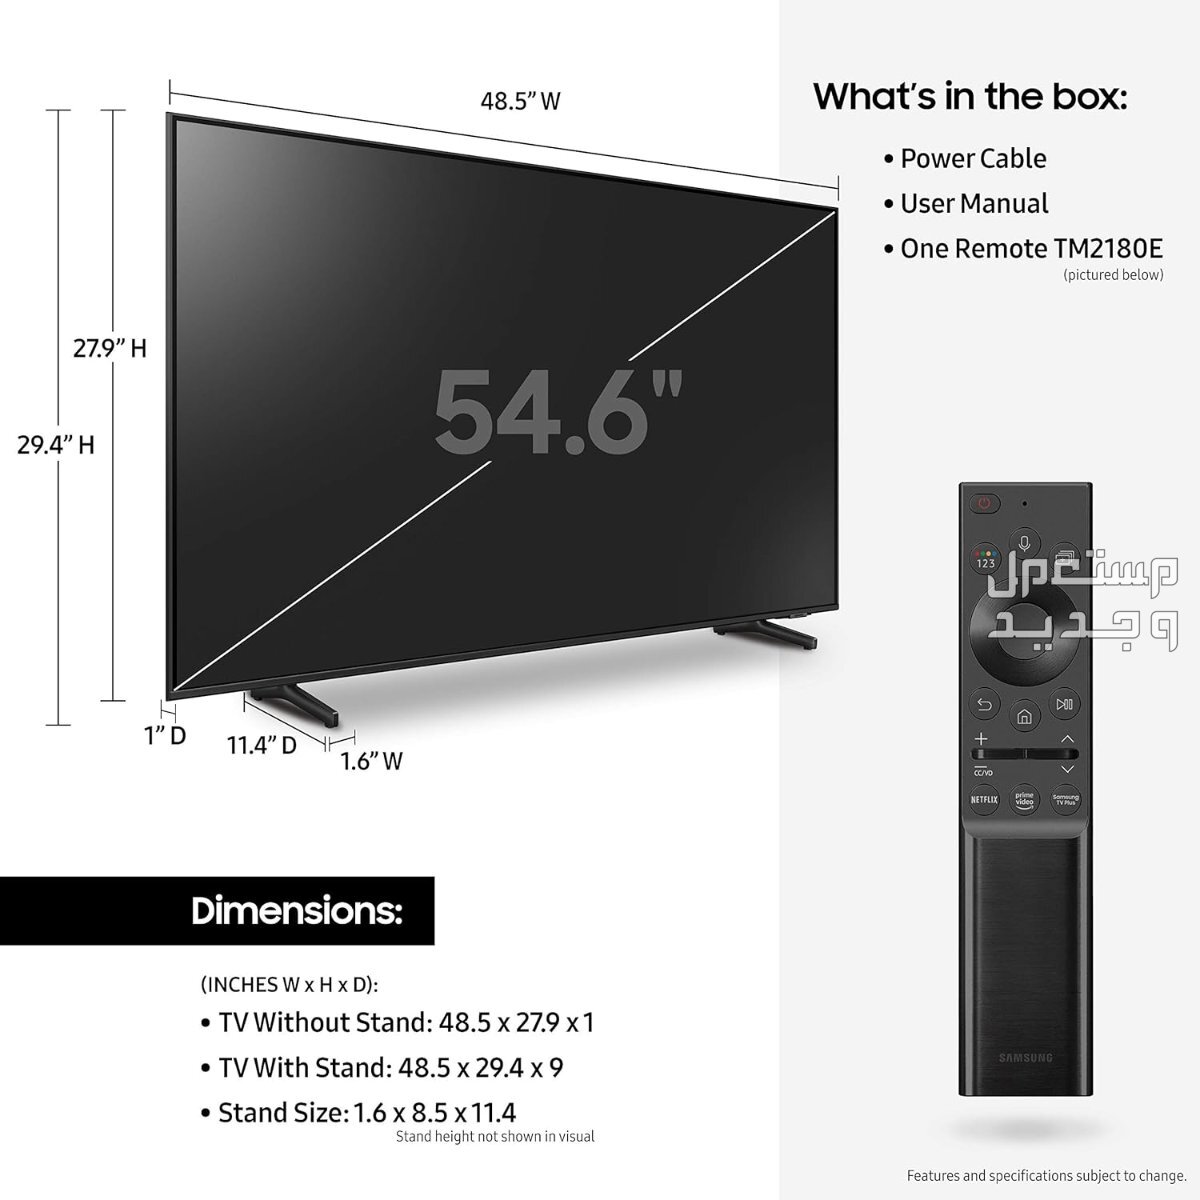 انواع تلفزيون 55 بوصة بالمواصفات والصور والأسعار في جيبوتي تلفزيون 55 بوصة ماركة سامسونج موديل QA55Q60ABUXUM